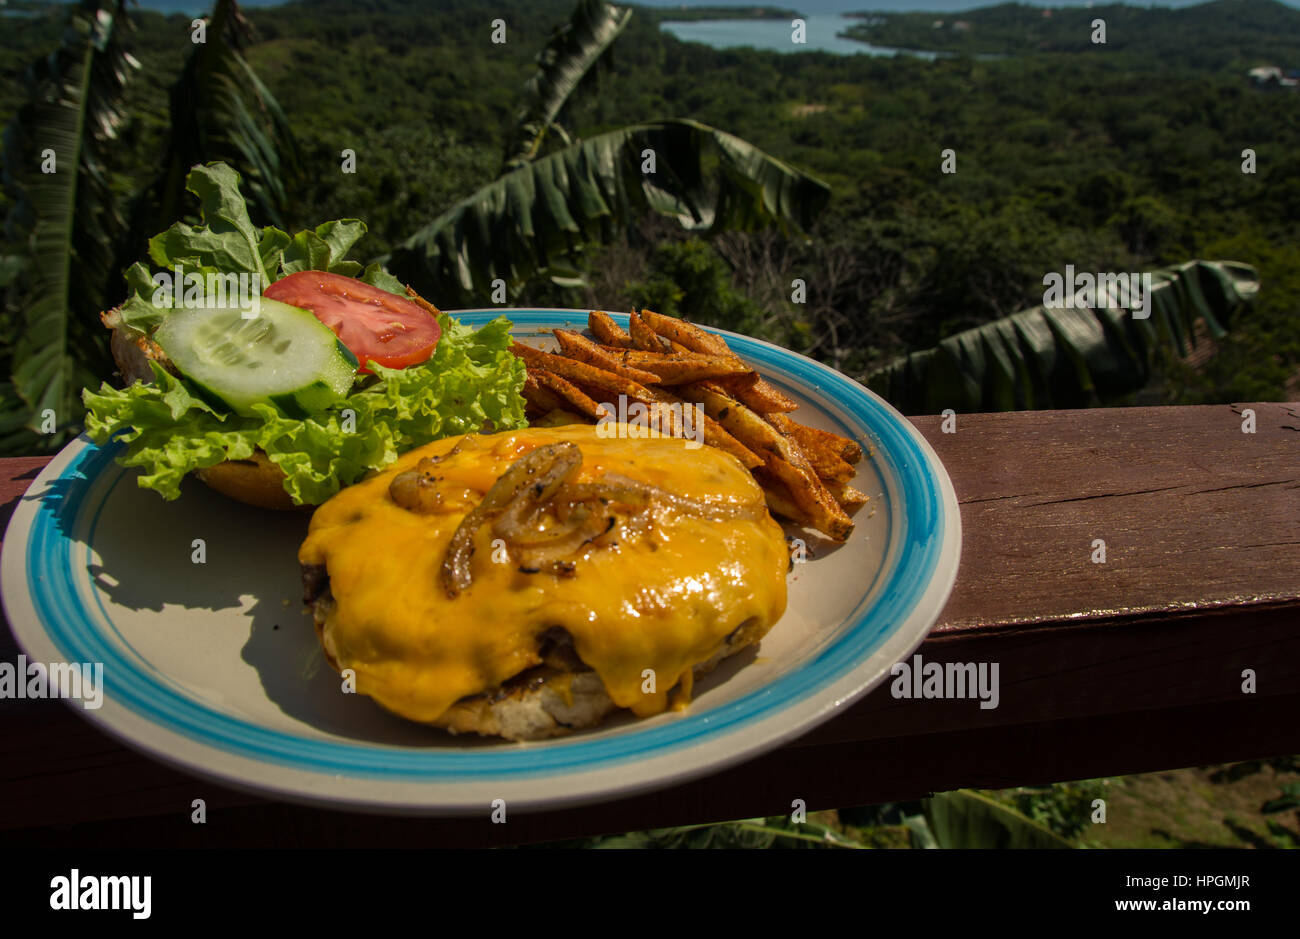 Cheeseburger au décor tropical Banque D'Images